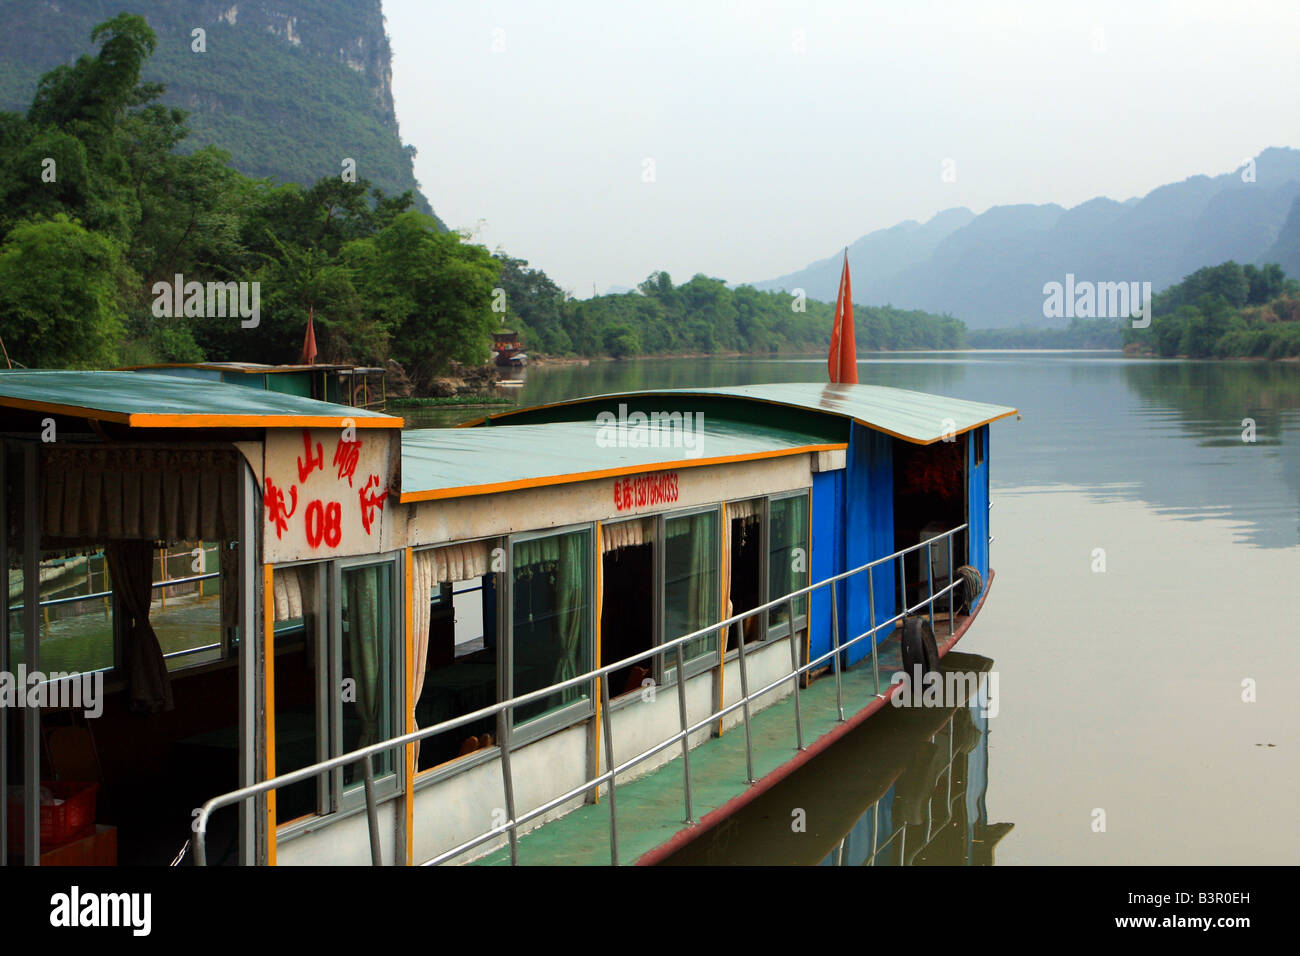 The Min Jiang River in south China's Guangxi Zhuang Autonomous Region Stock Photo